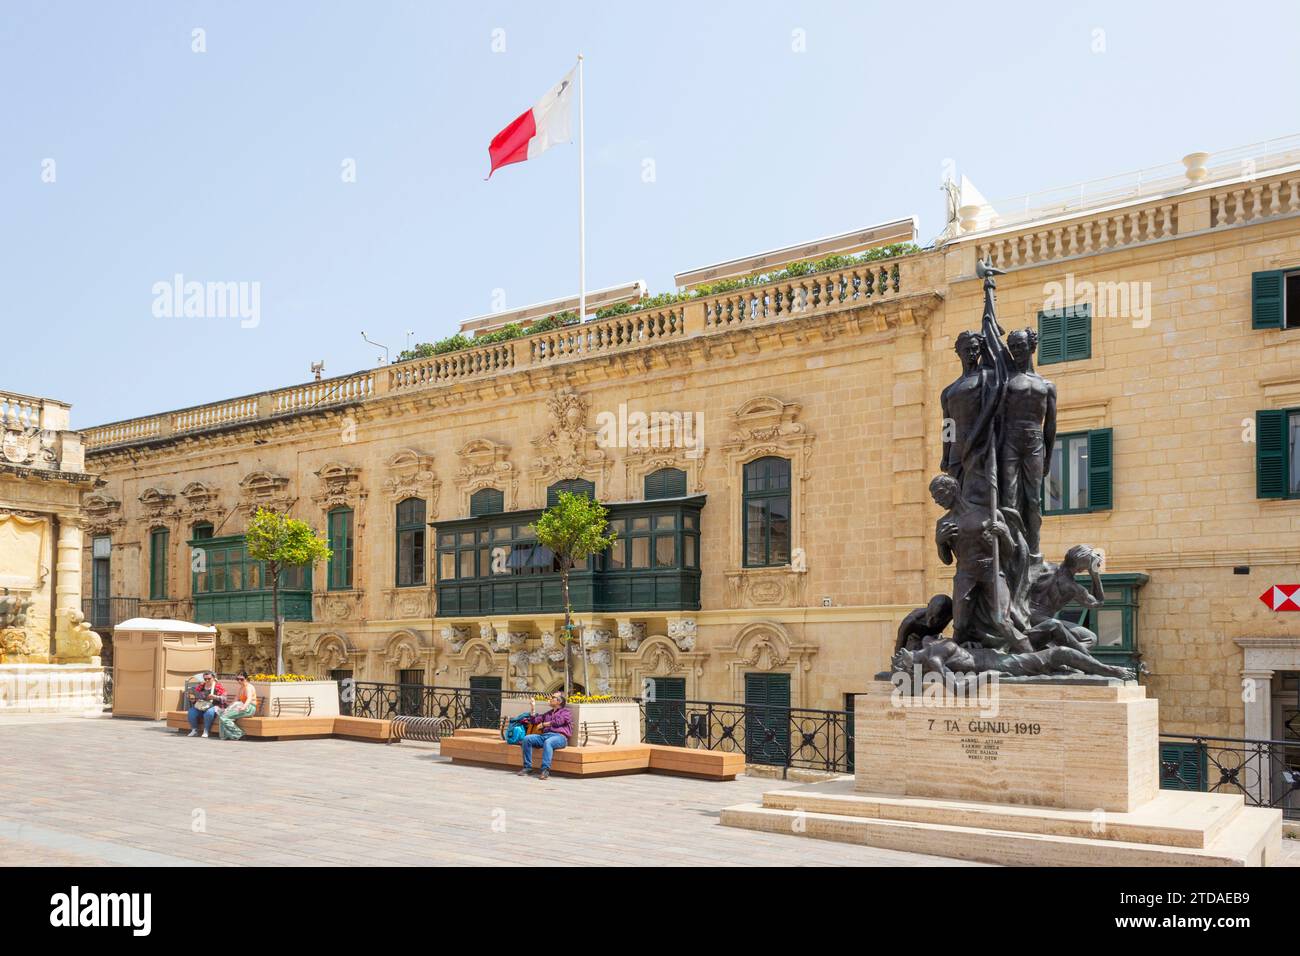 Le monument Sette Giugno, place du Palais (place Saint-Georges), la Valette, Malte. Sette Giugno aka septième de juin est une parcelle de fête nationale maltaise Banque D'Images